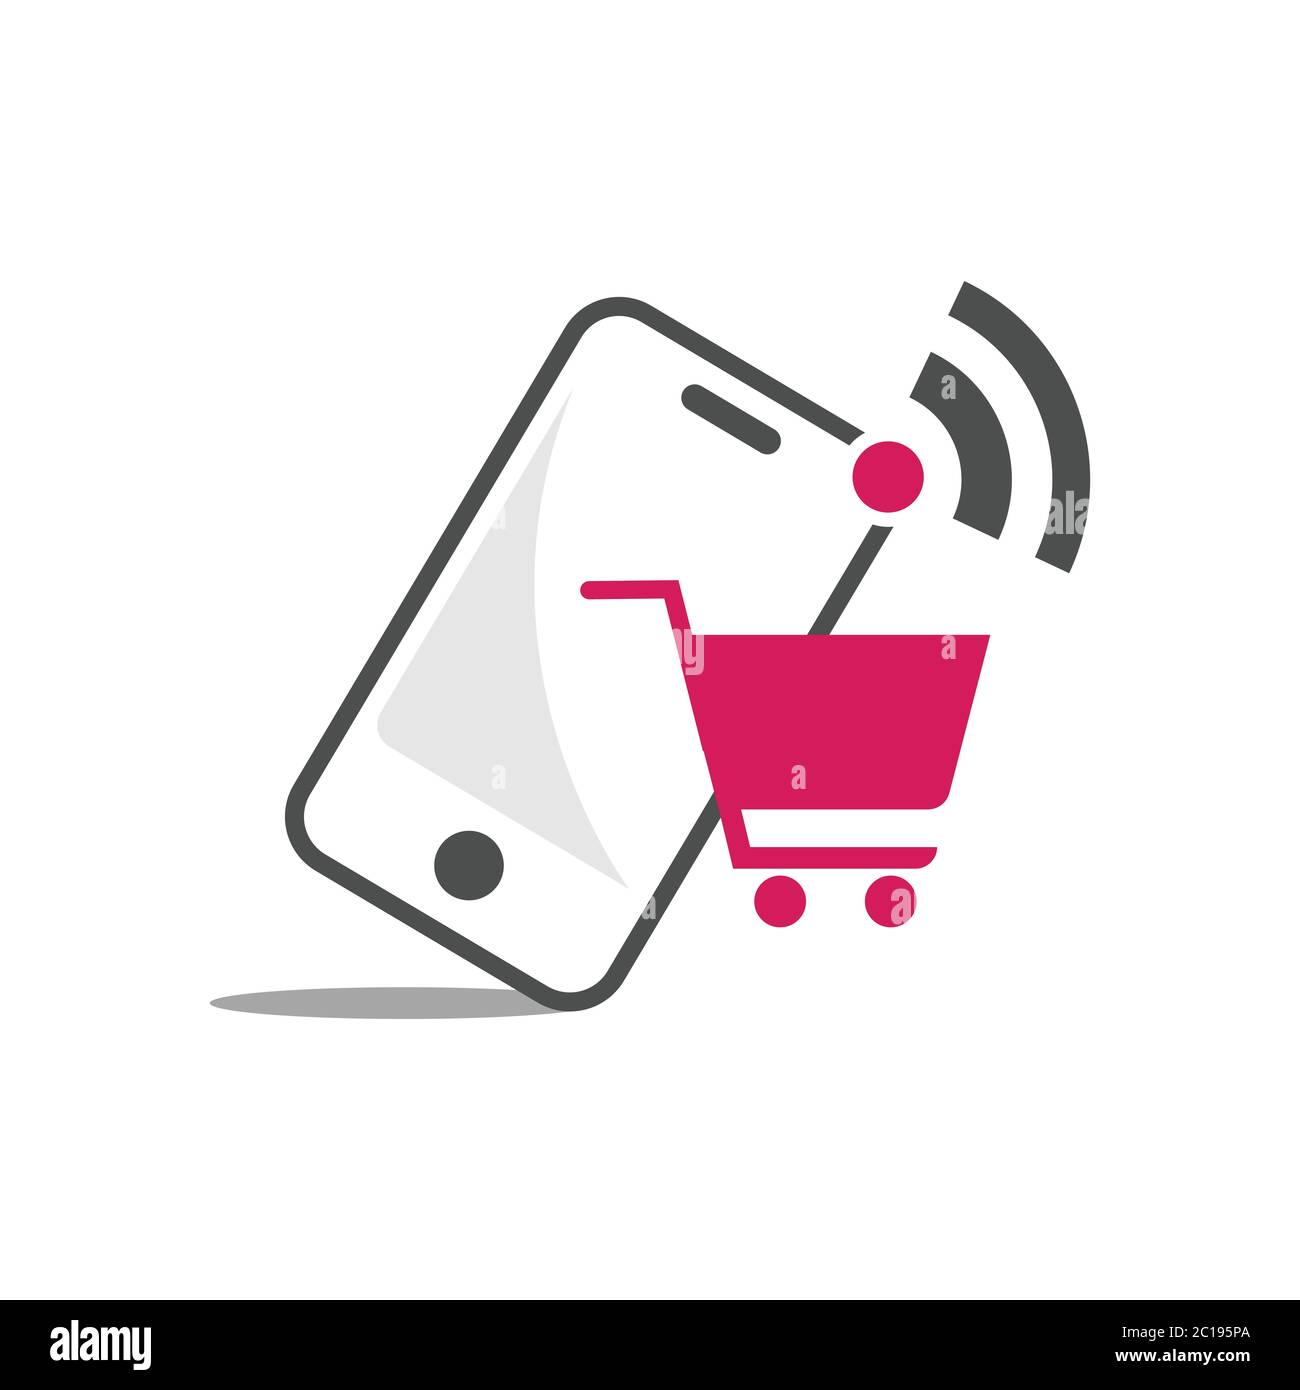 Online shop logo design vector illustrtaion. Mobile online shopping logo  vector template Stock Vector Image & Art - Alamy